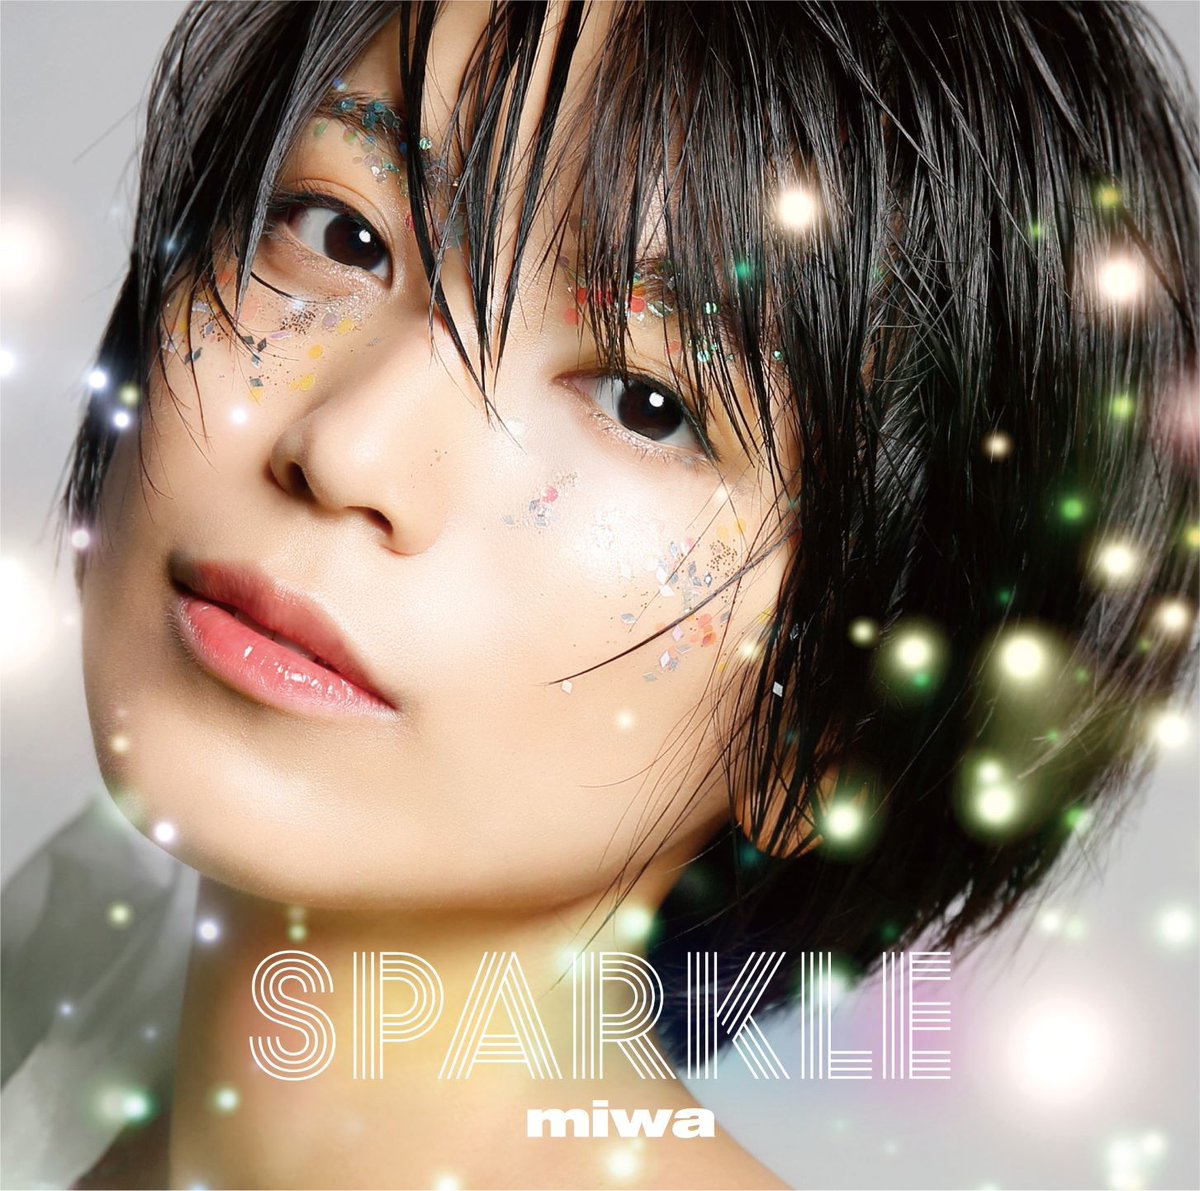 『miwa - Sparkle 歌詞』収録の『Sparkle』ジャケット